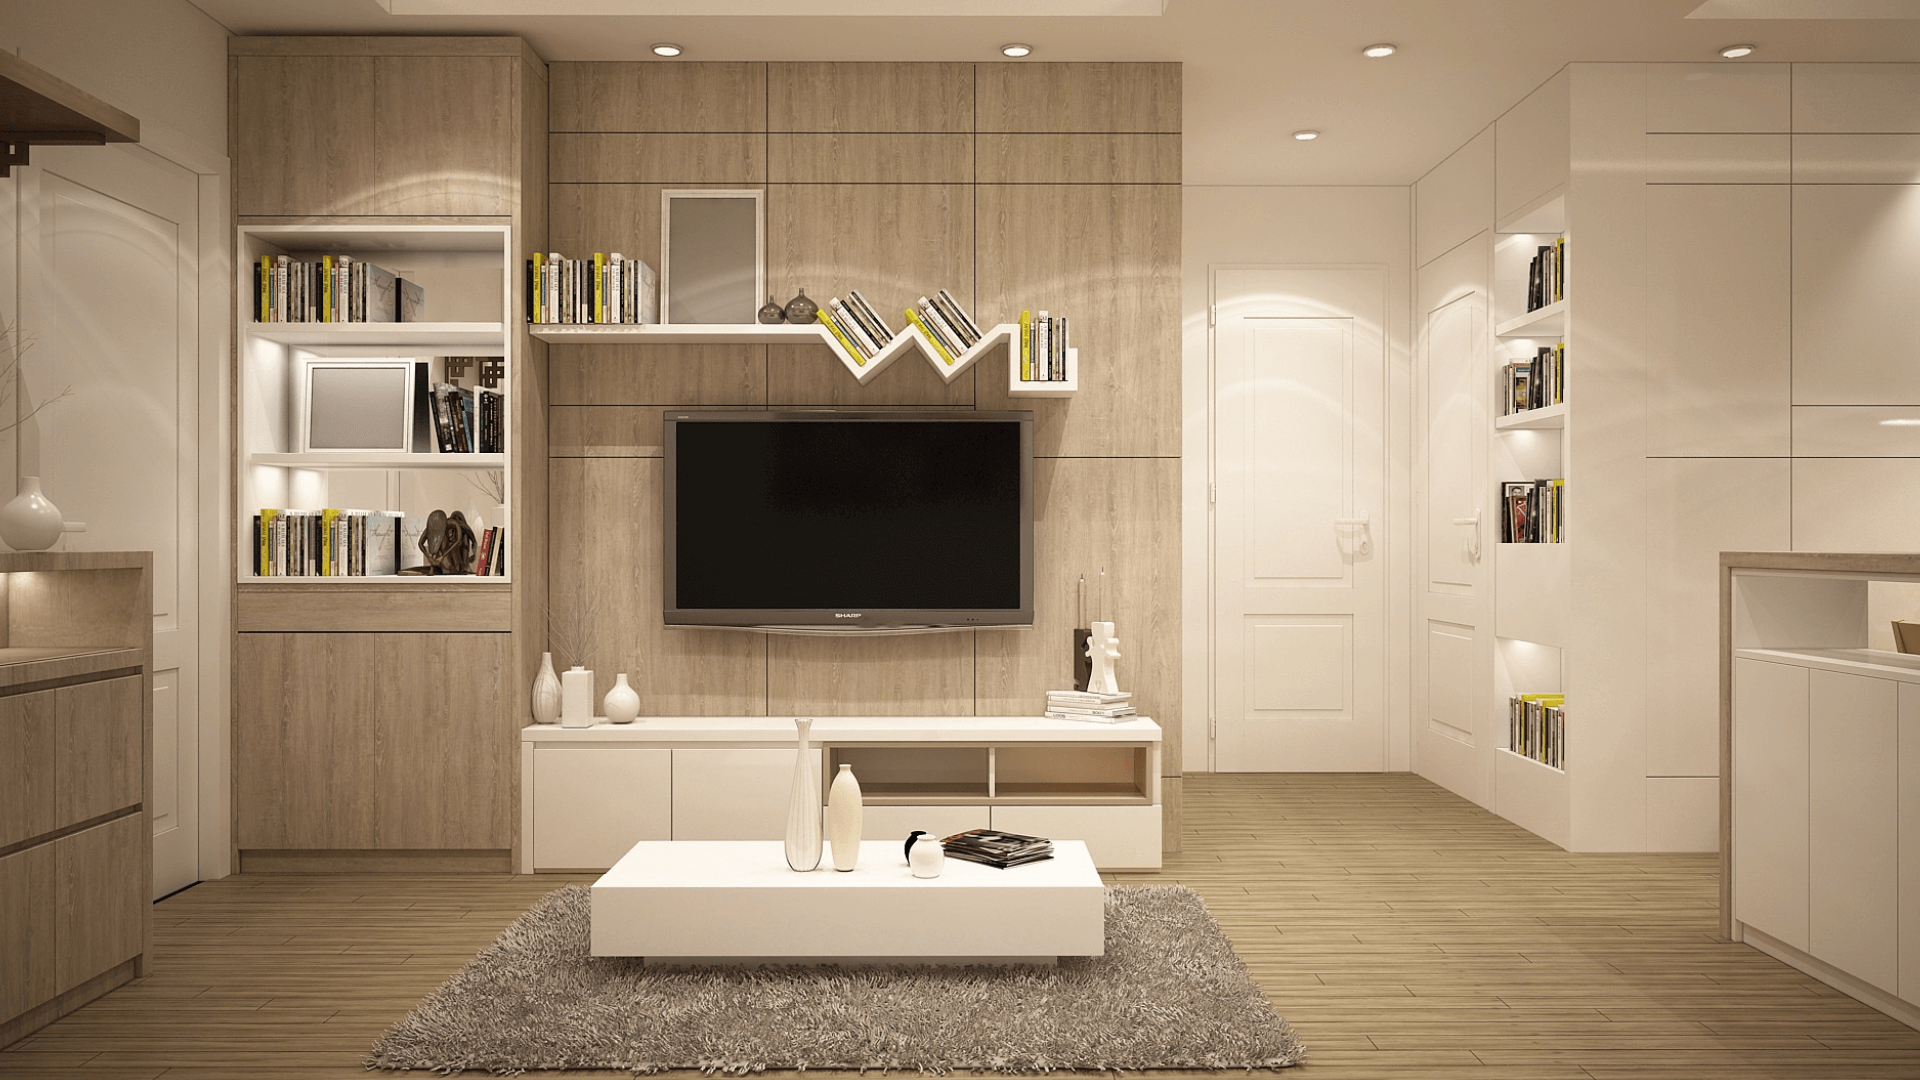 Ein zeitgemäßes Wohnzimmer mit einer Vielzahl von Smart Home-Technologien, die die Verbindung von Technologie und Immobilienmarkt repräsentieren.